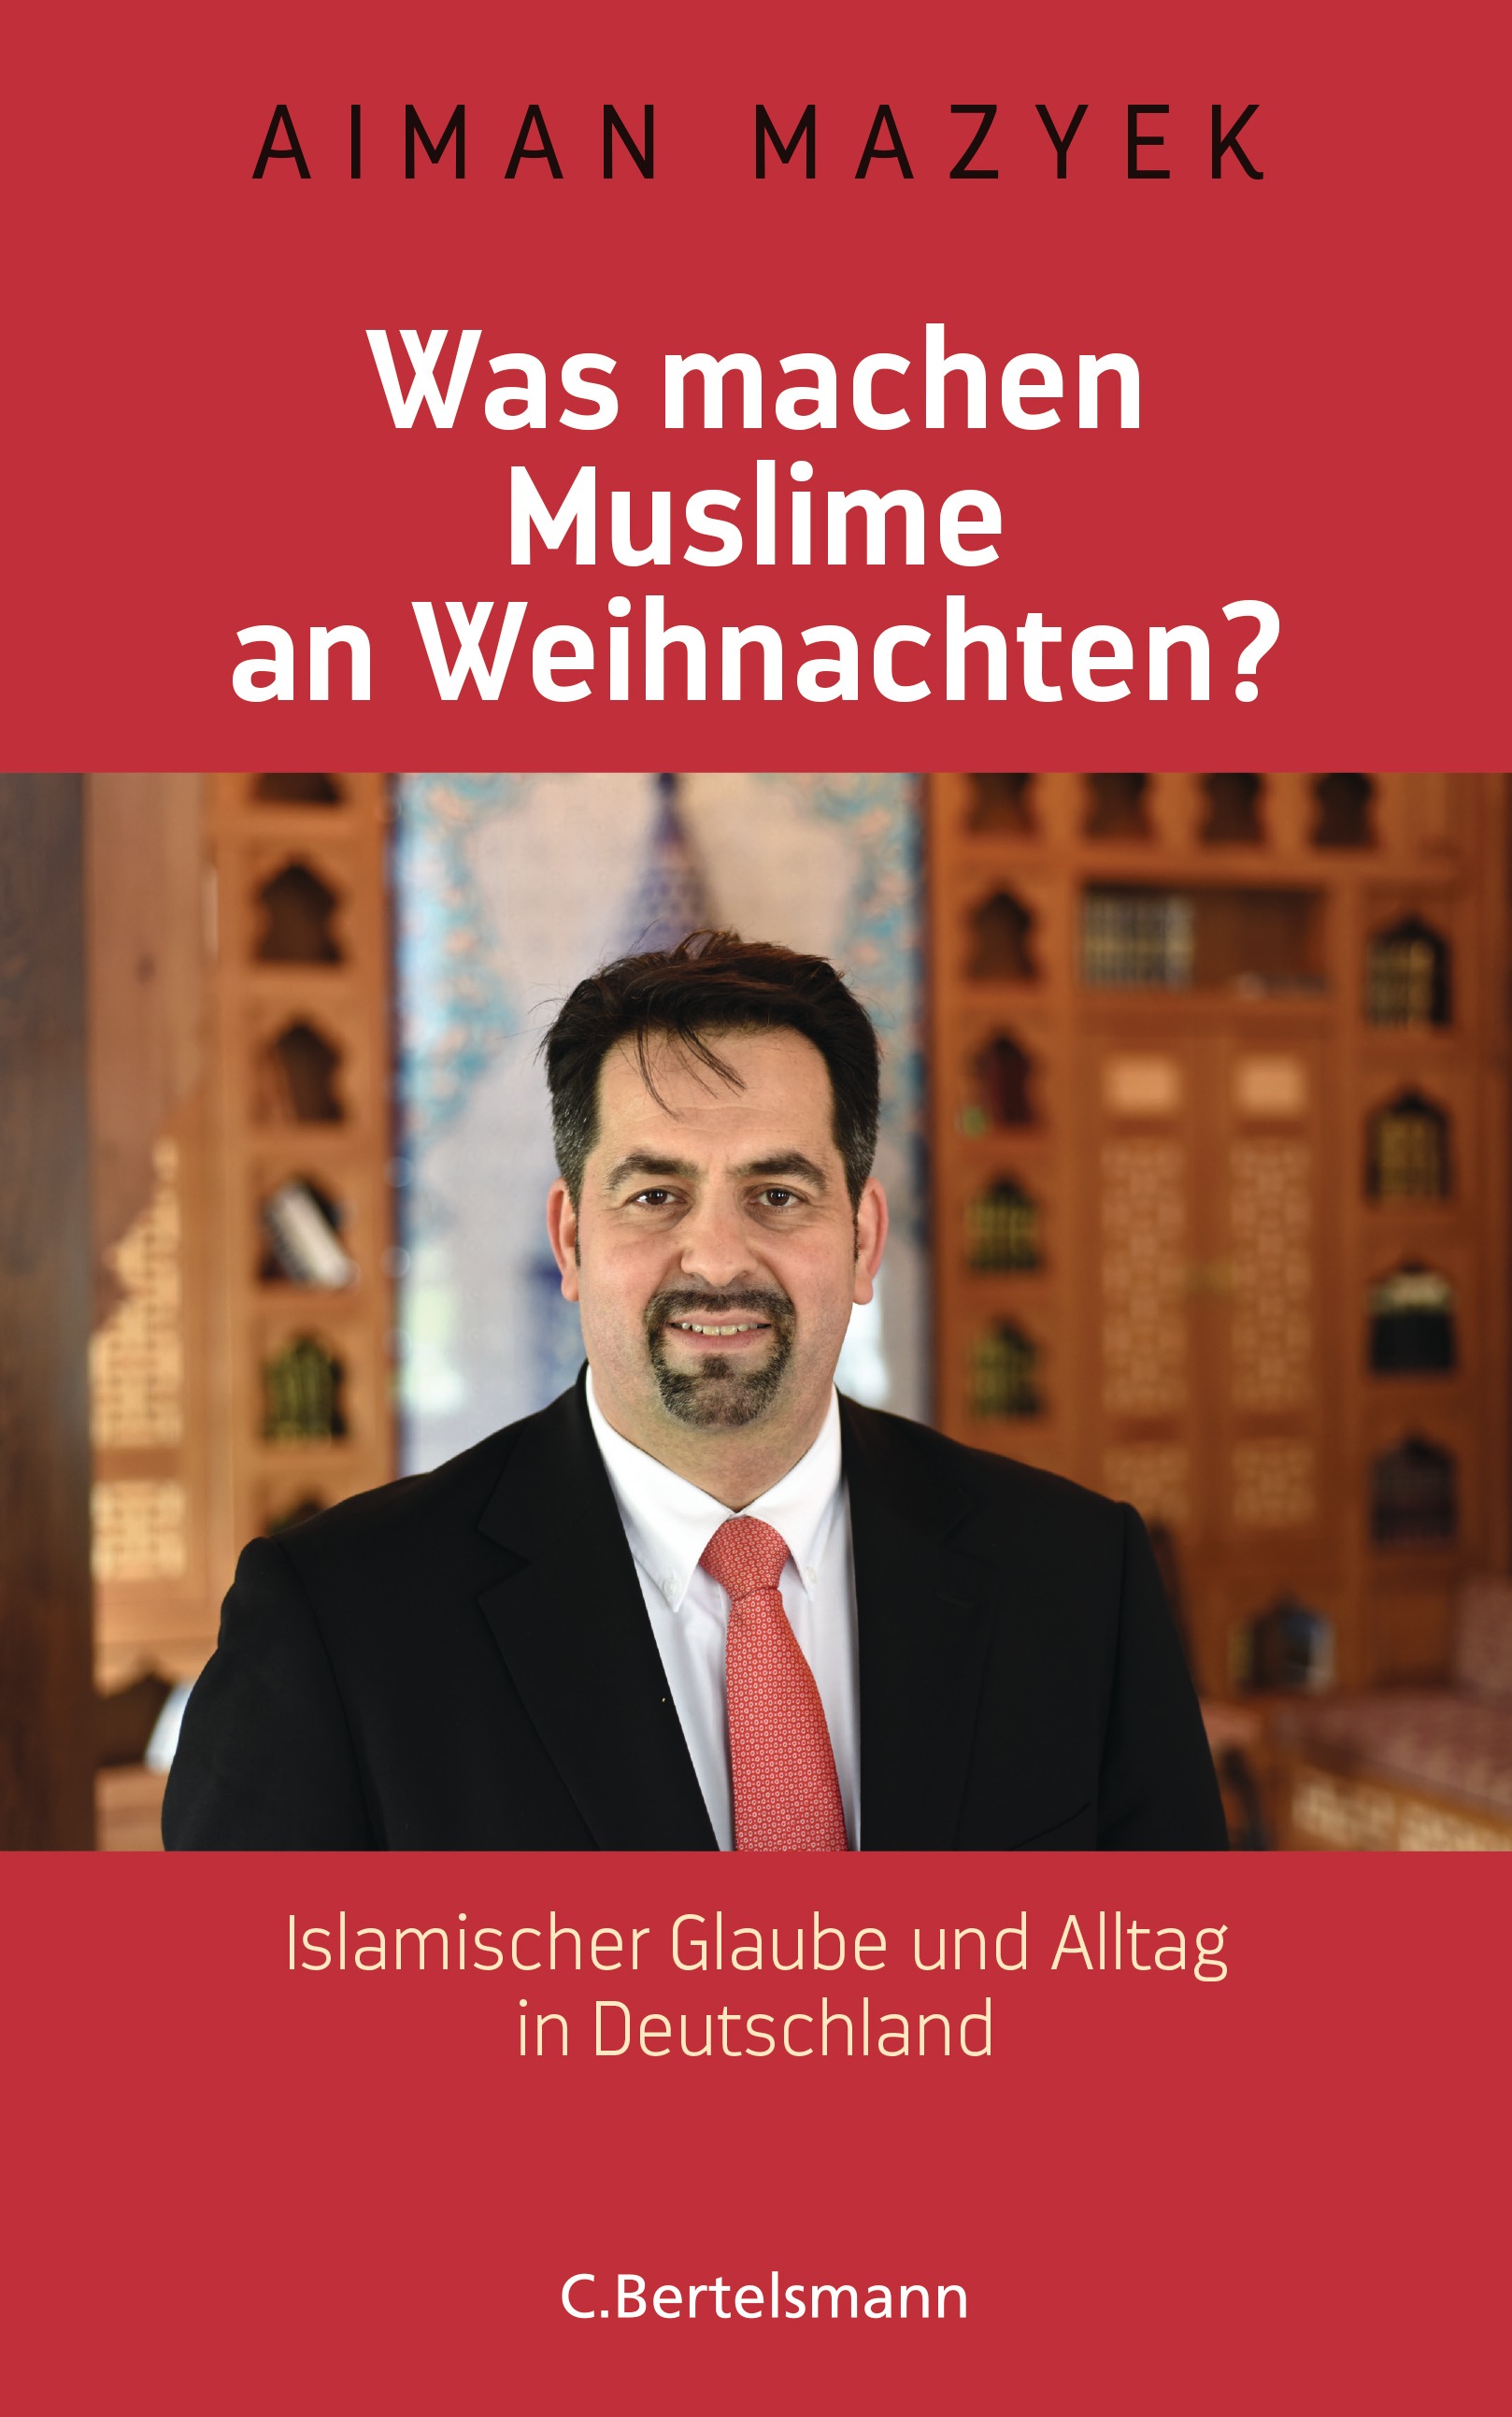 Buchcover Aiman Mazyek: "Was machen Muslime an Weihnachten? Islamischer Glaube und Alltag in Deutschland", Verlag C. Bertelsmann 